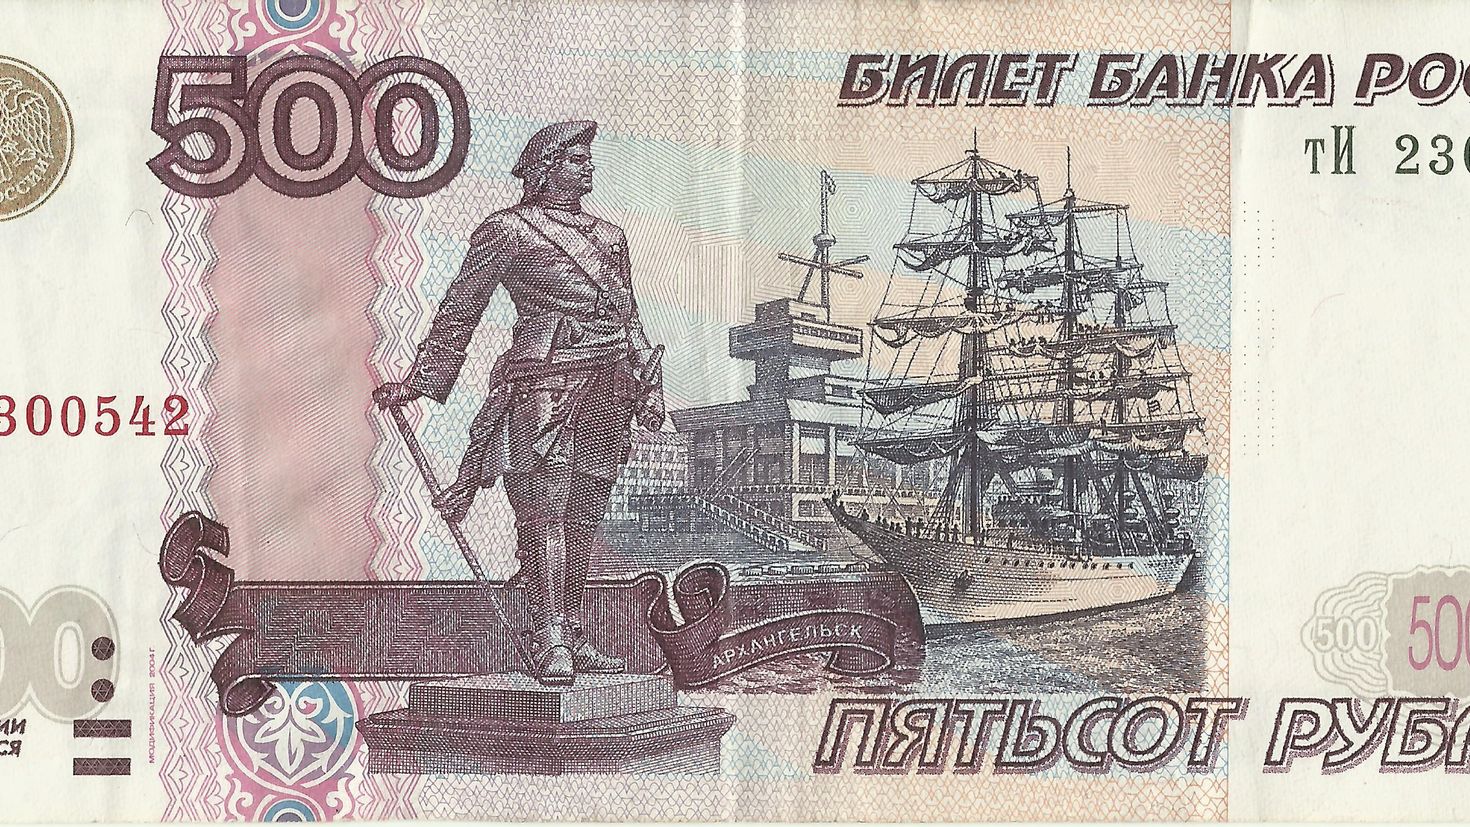 Пятьдесят не меньше. Банкнота России 500 рублей. 500 Рублей 1997 года бумажные модификация 2001. Банкноты 1997 года модификации 2001. Банкноты России 500 рублей.